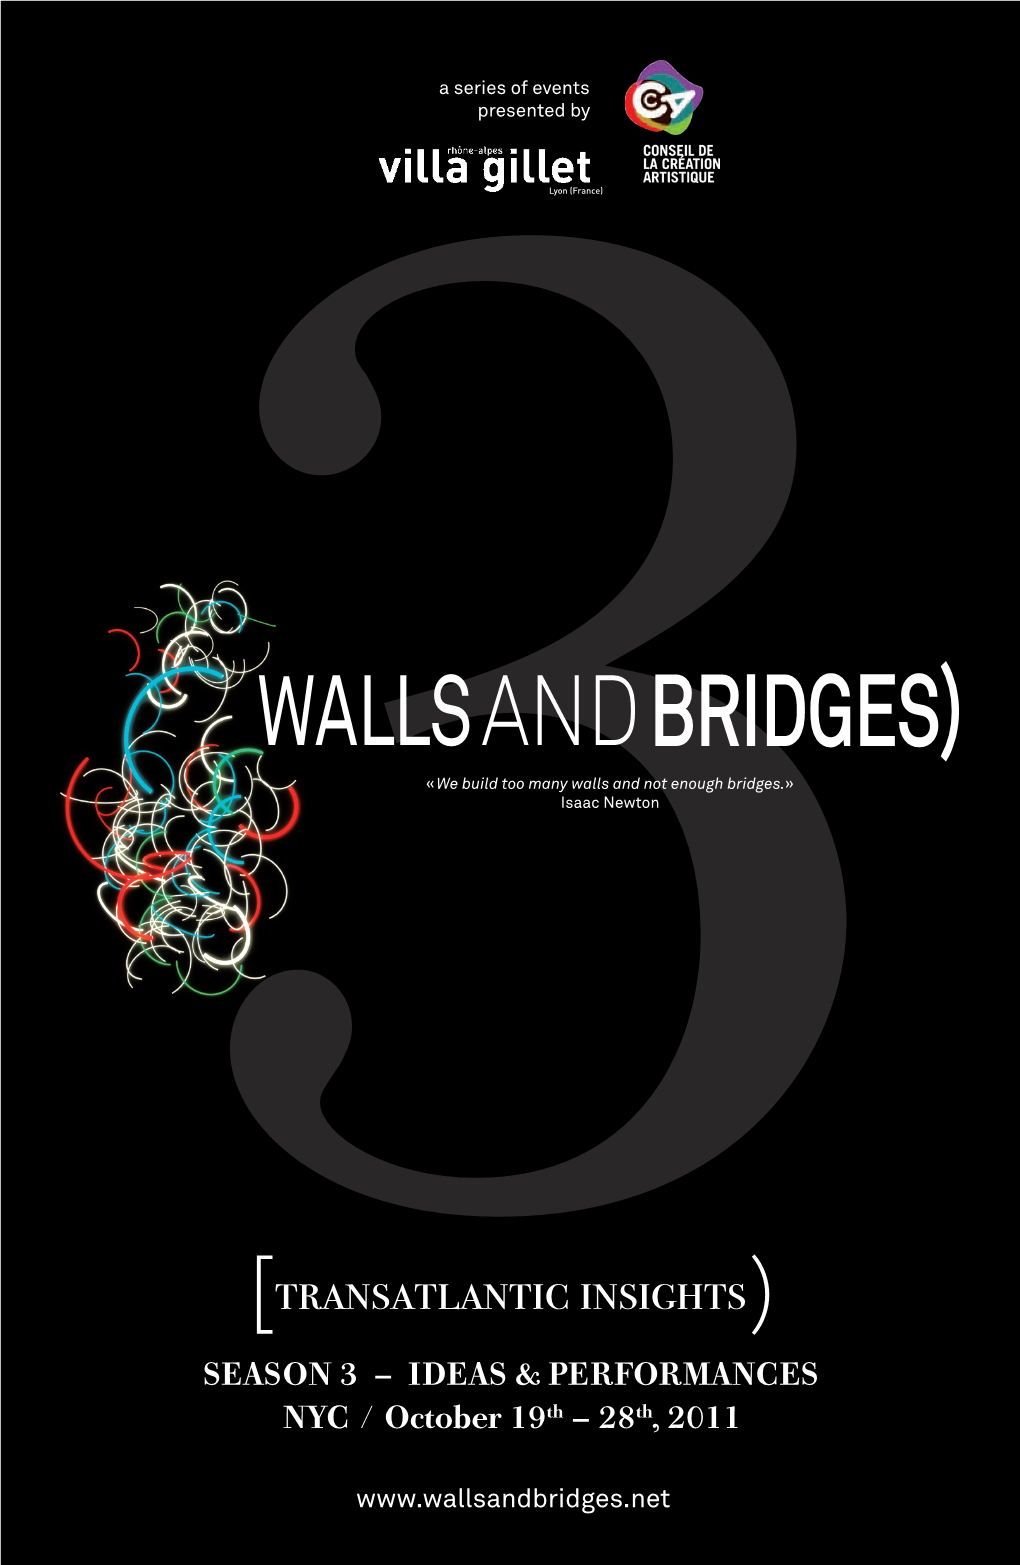 3Walls and Bridges)